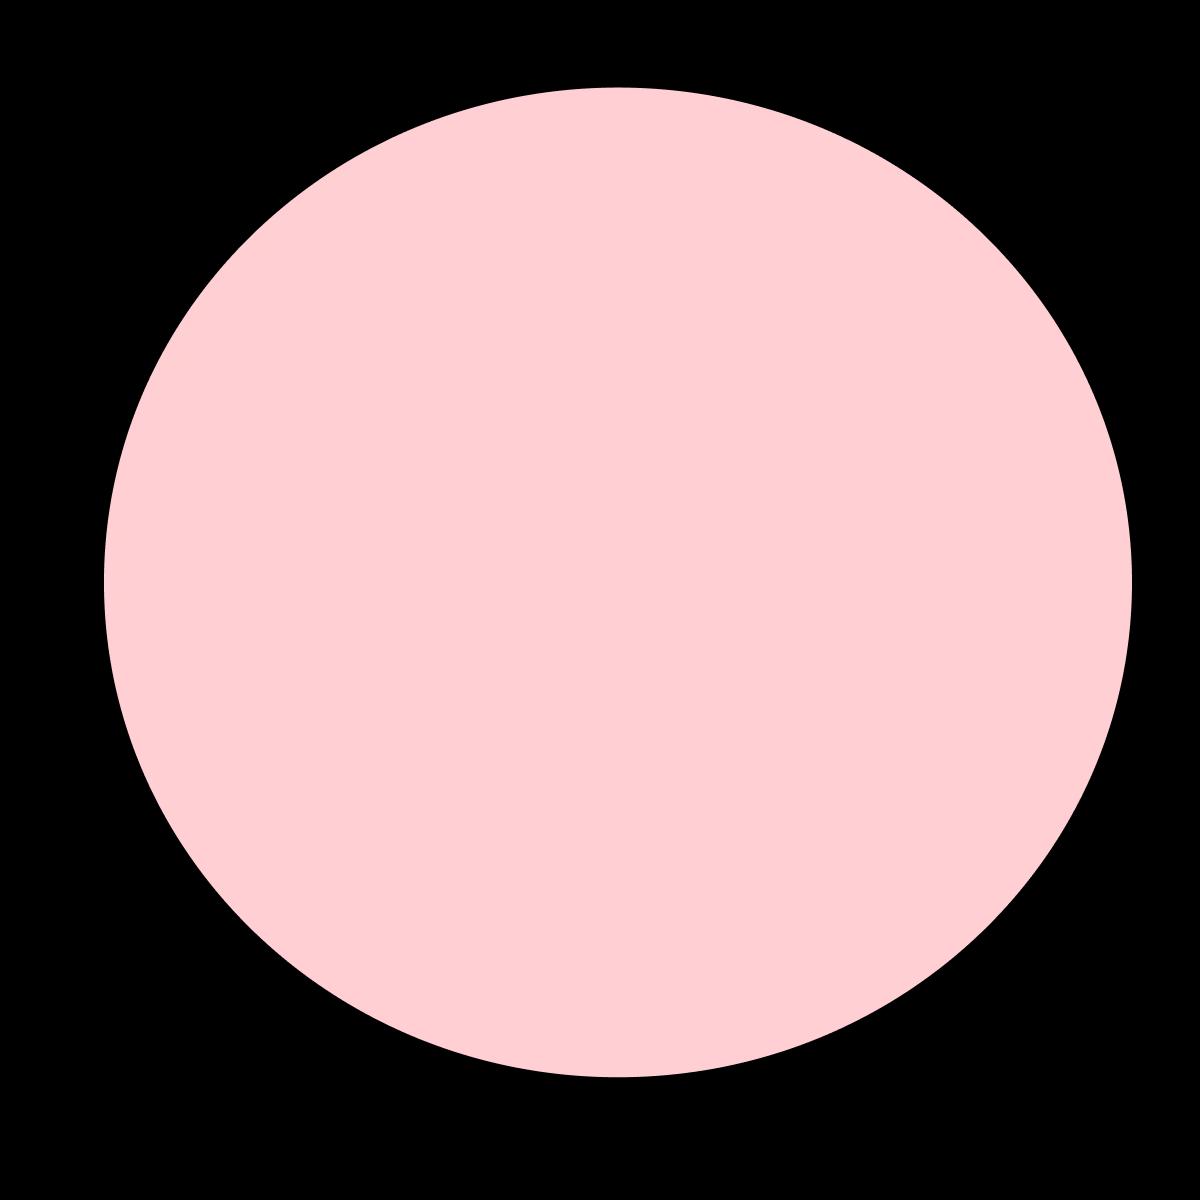 Circulo em rosa ao fundo